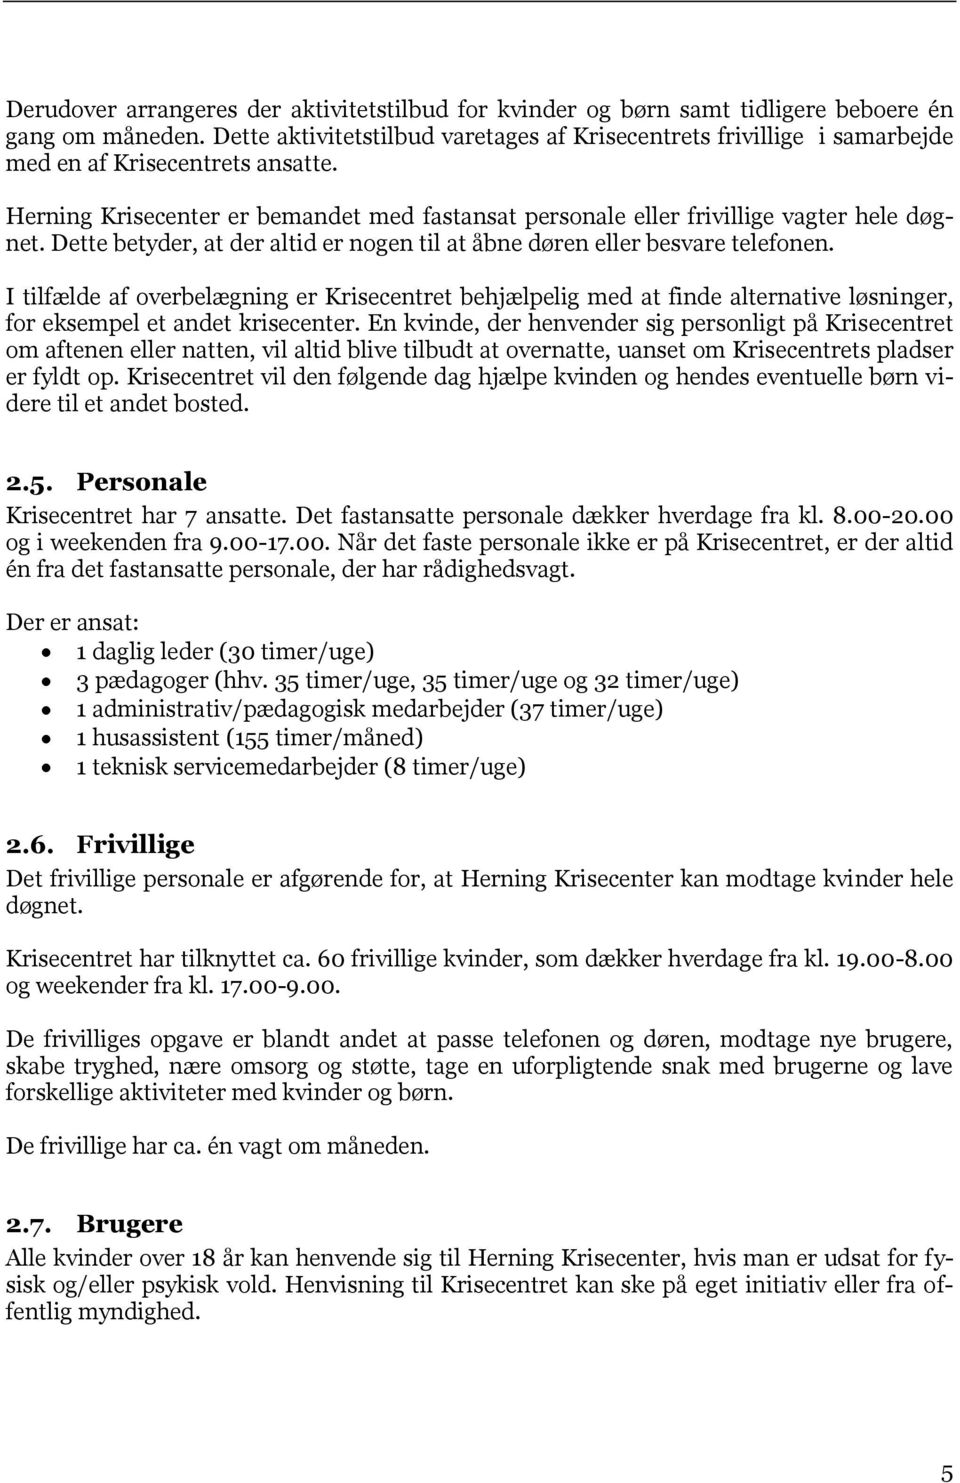 ANALYSE af Herning Krisecenter - PDF Gratis download